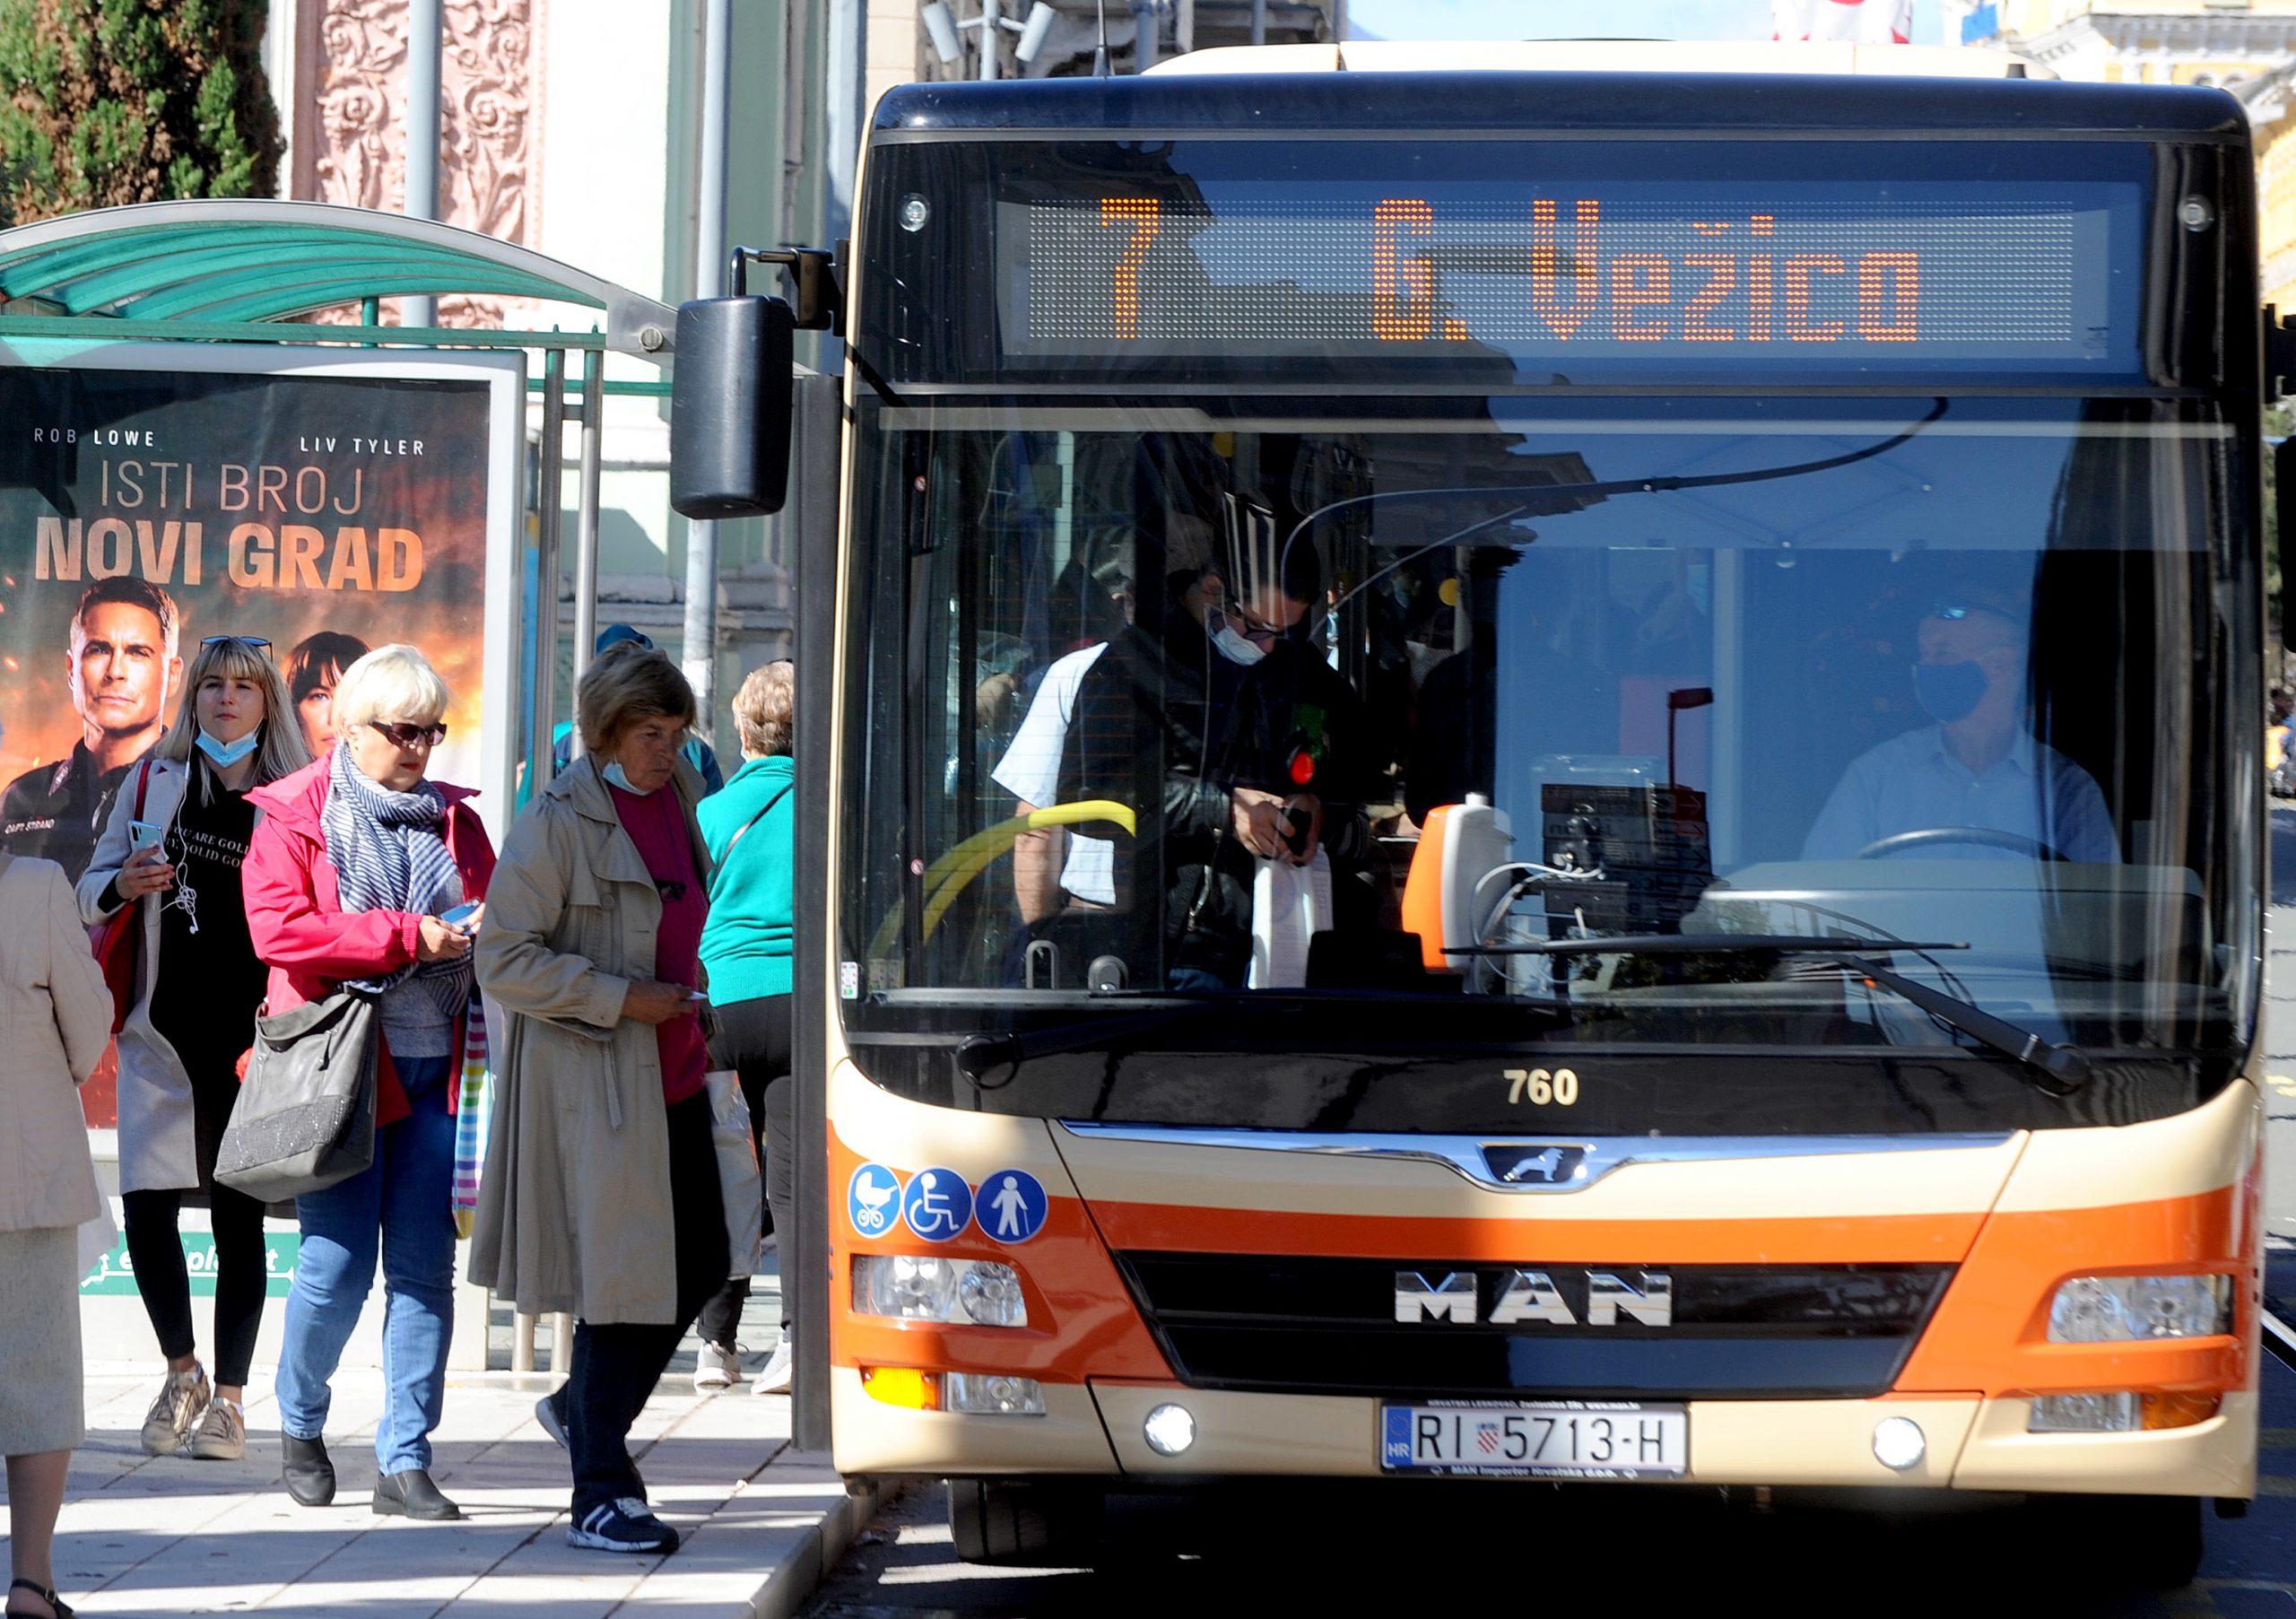 Riječki javni prijevoznik nije mijenjao cijene od 2008. godine / Foto Marko Gracin